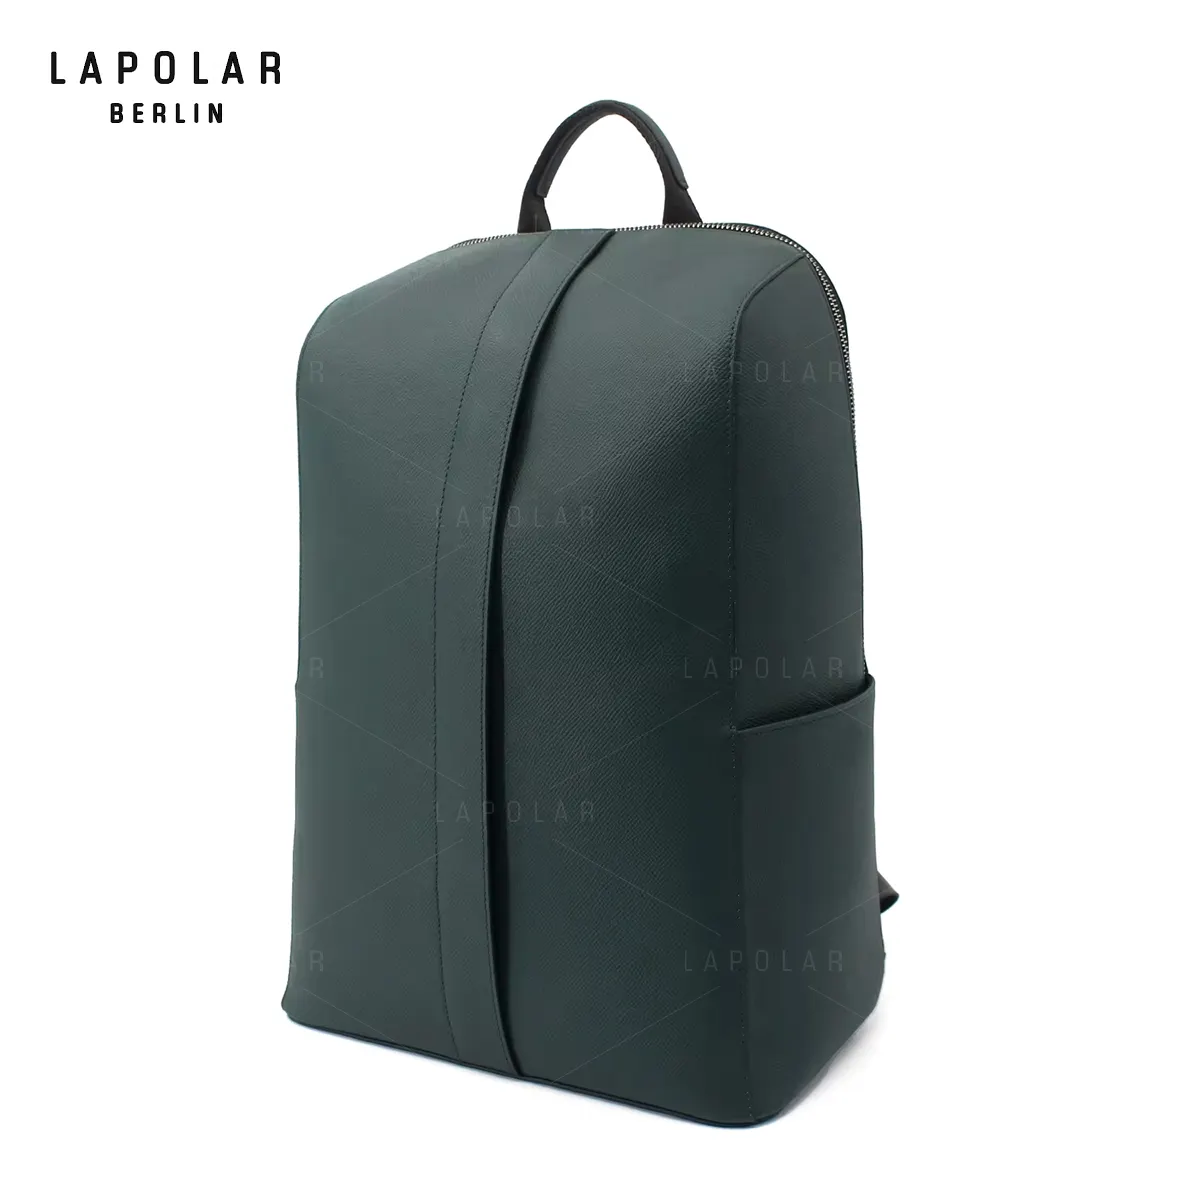 LAPOLAR lüks ve yüksek kaliteli erkek deri sırt çantası günlük sırt çantası büyük açık spor sırt çantası